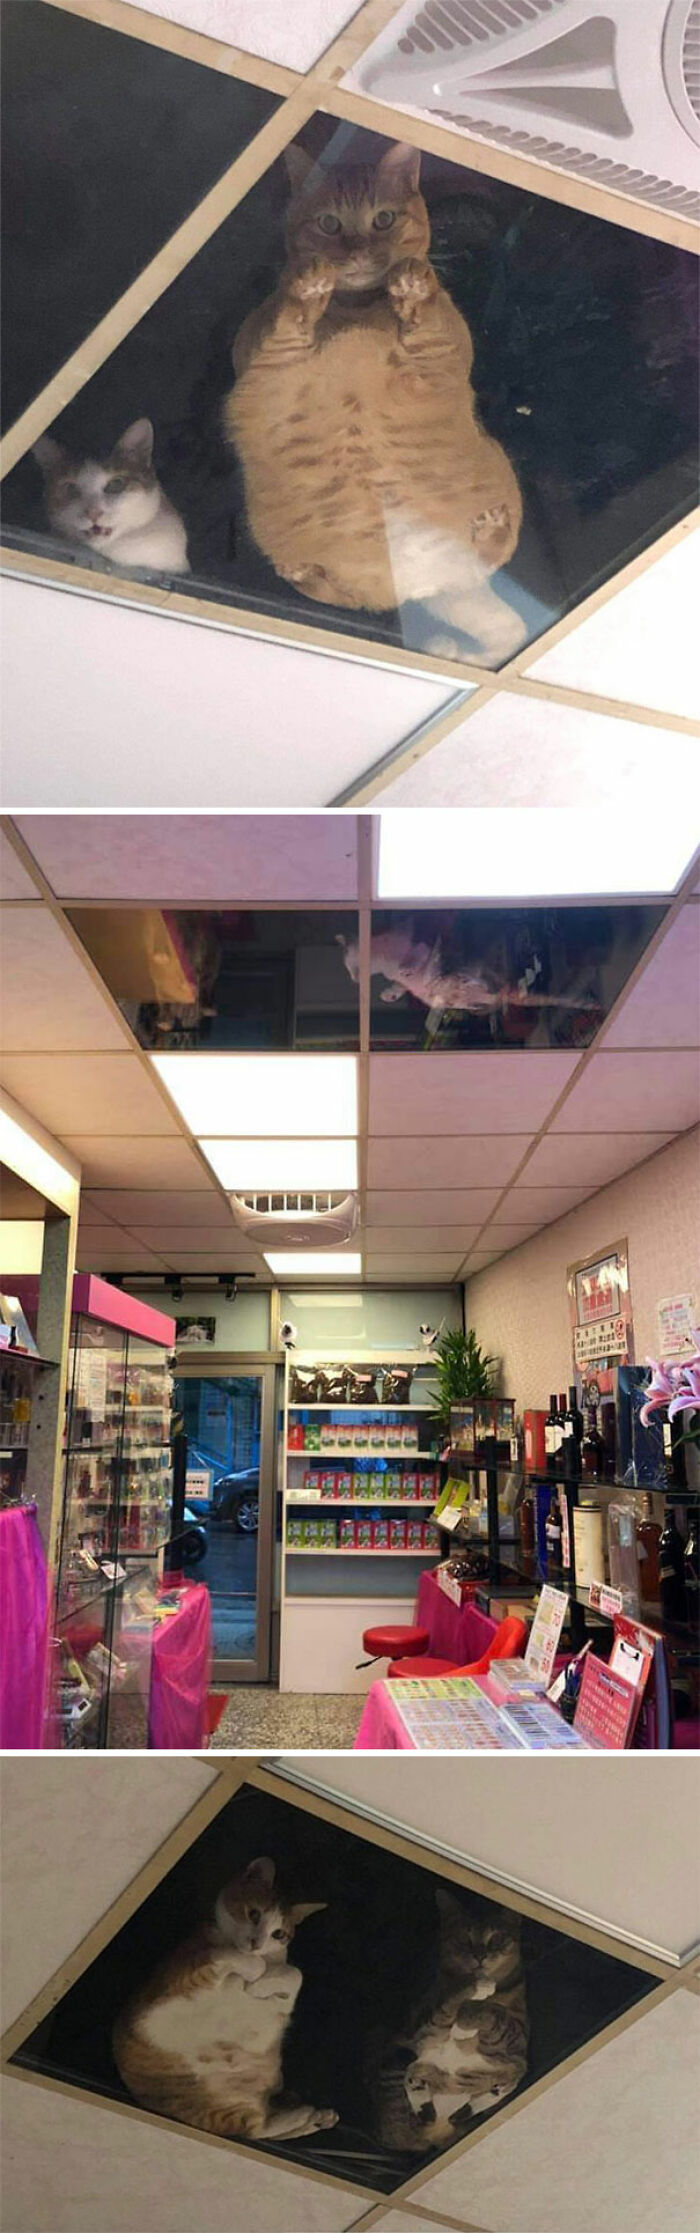 El dueño de una tienda colocó un techo de vidrio para que los gatos pudieran observarlo mientras trabajaba